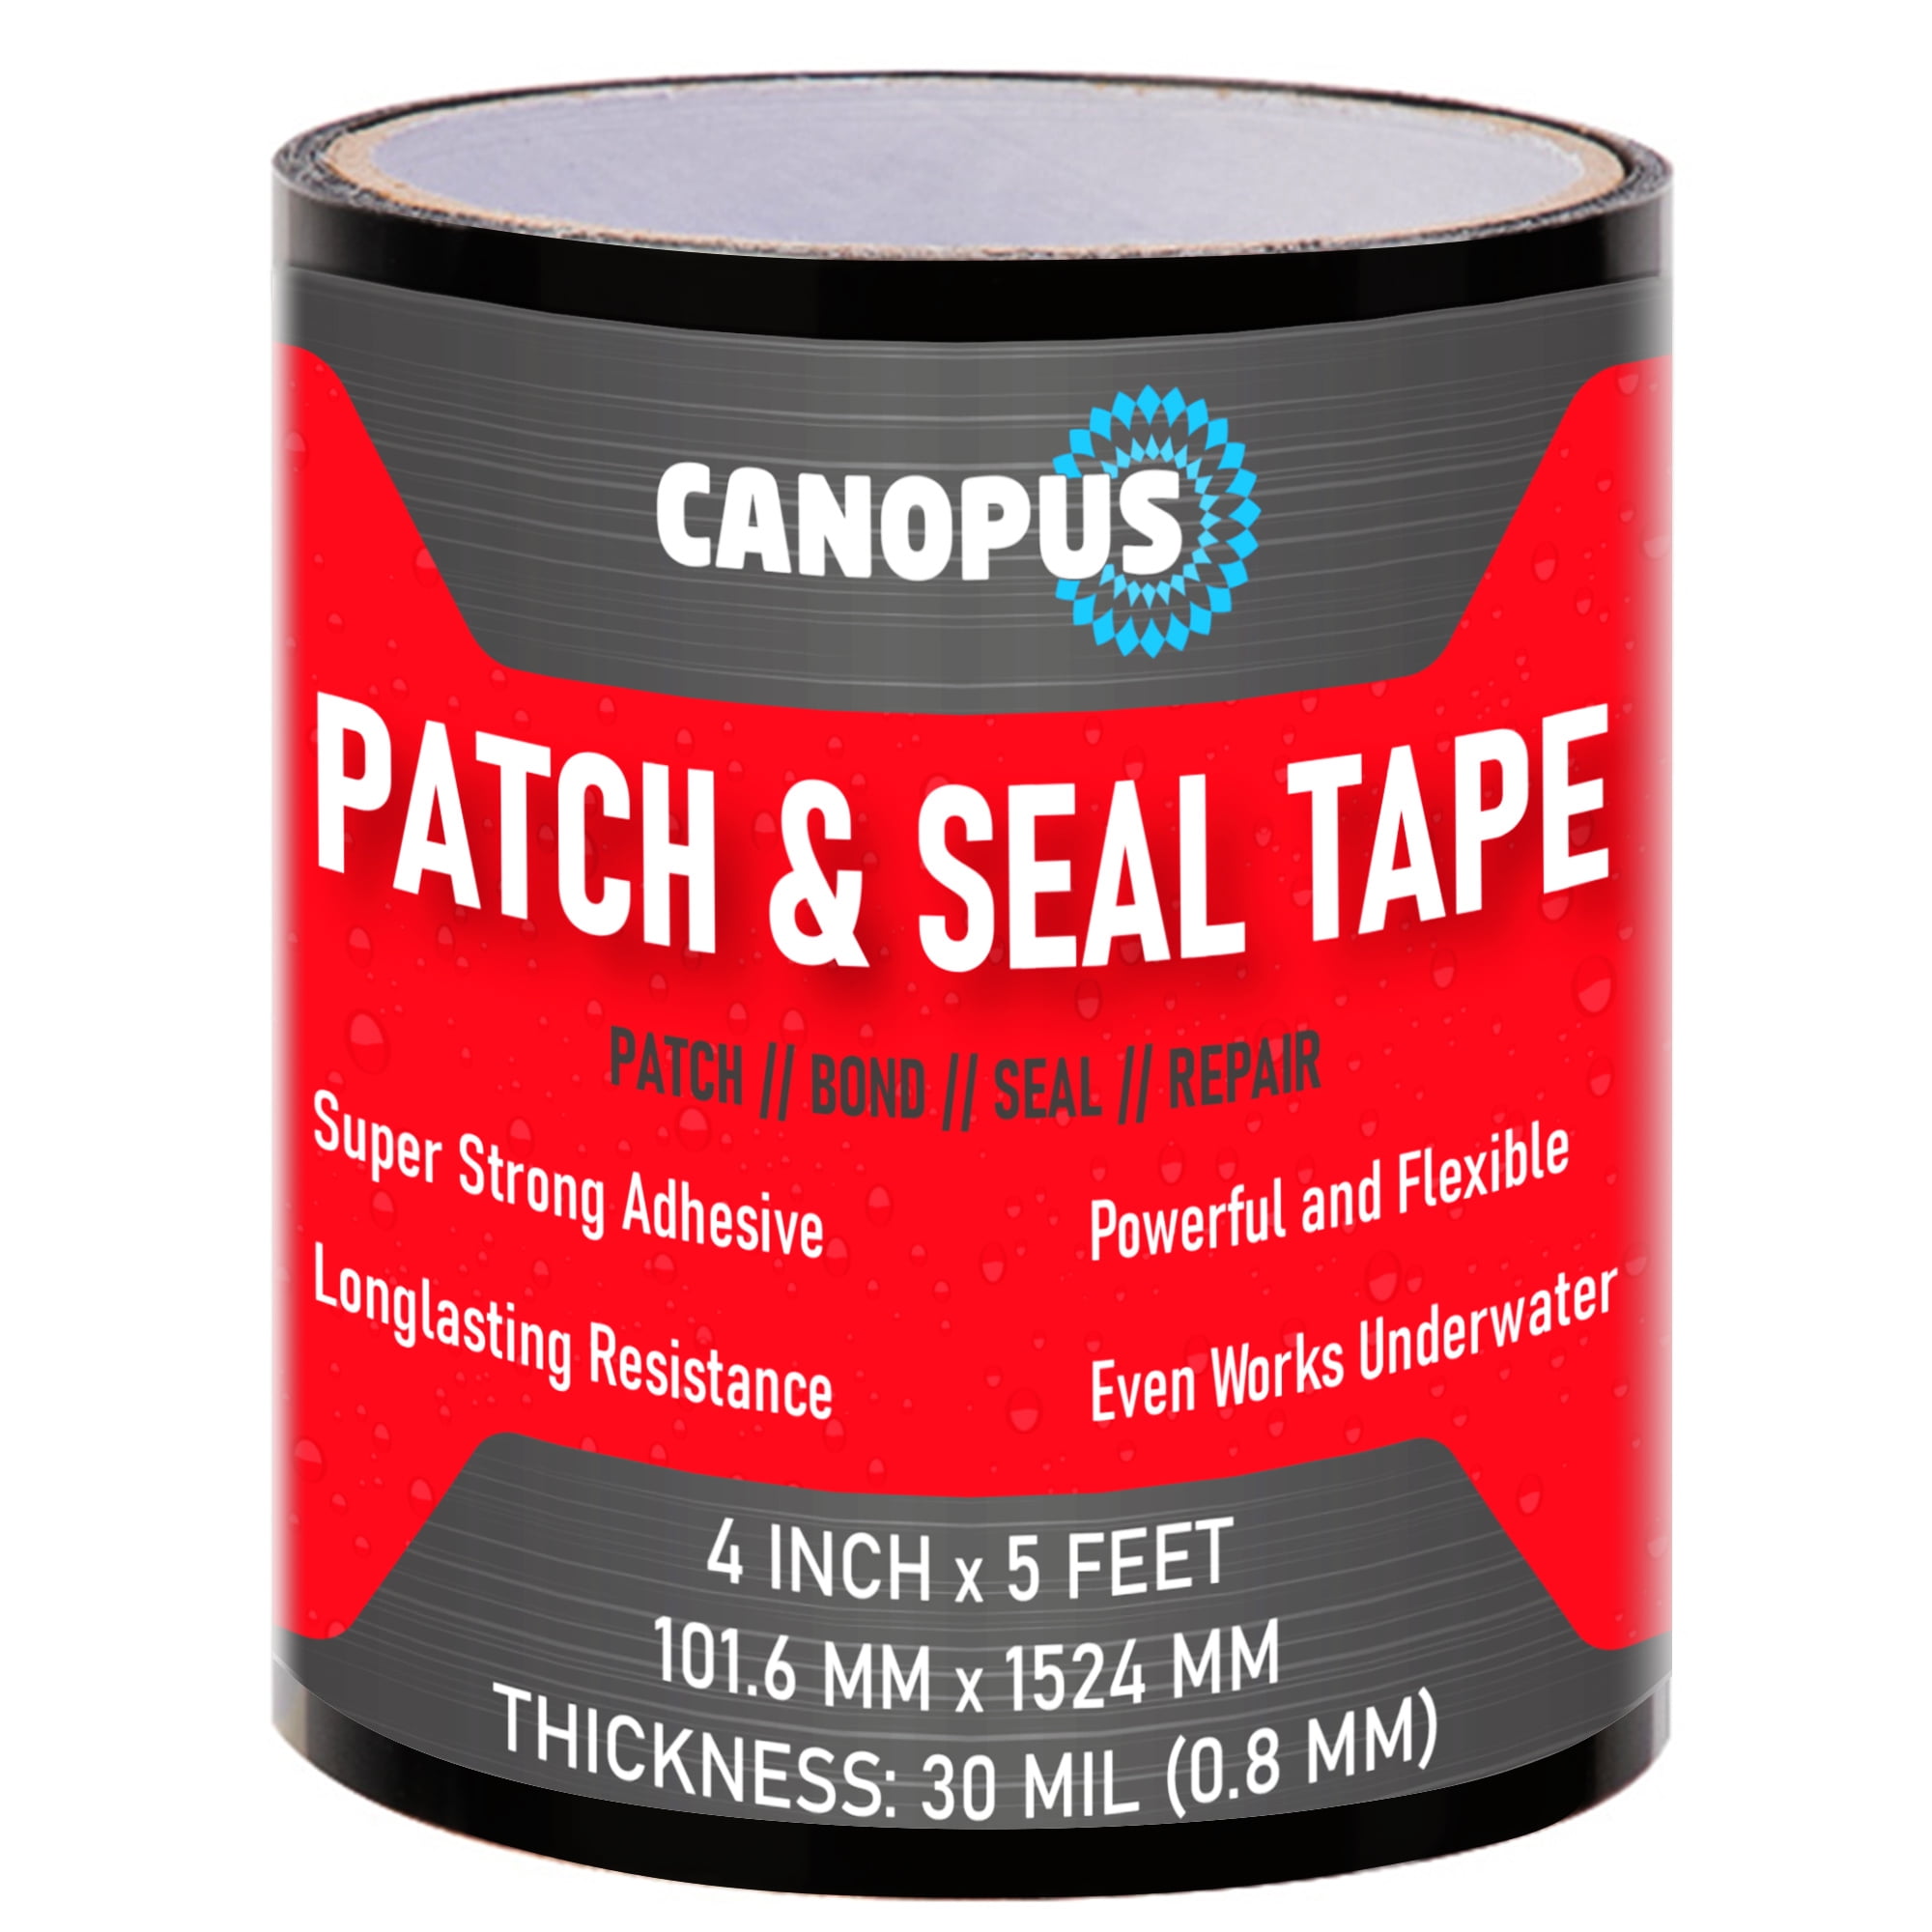 XFasten Waterproof Patch Seal Tape, Black, 4-Inch by 10-Foot